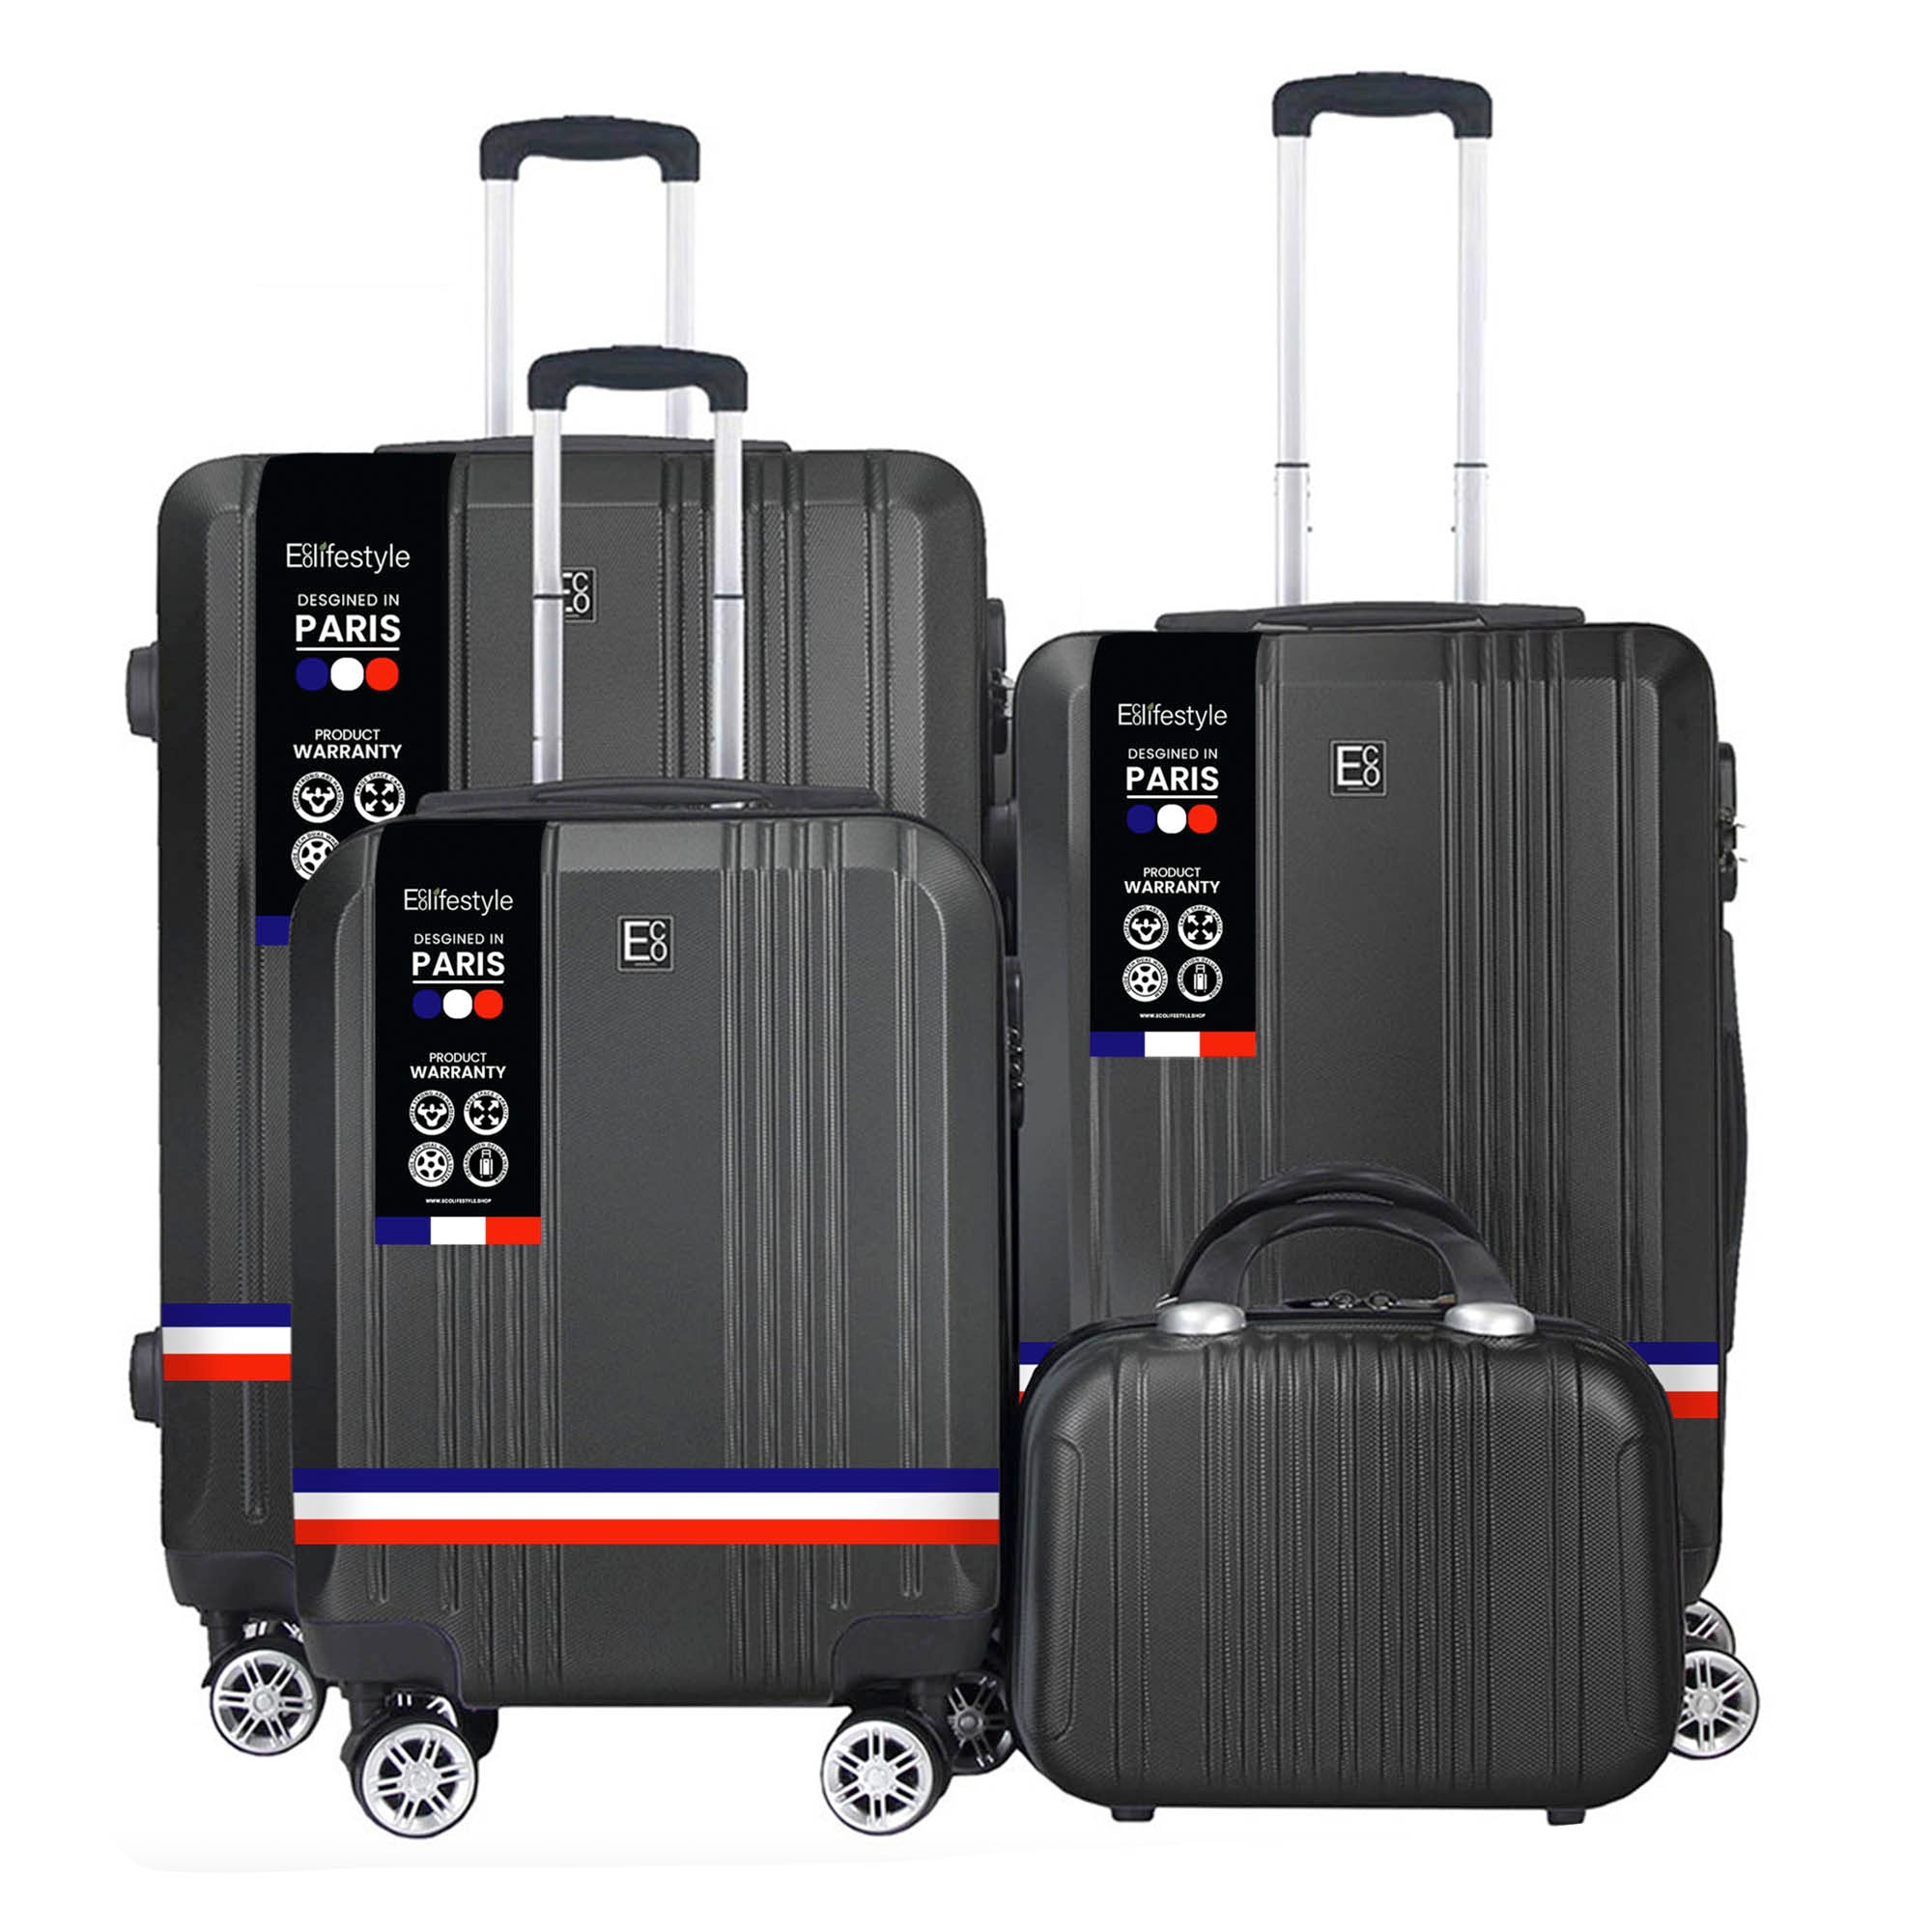 Reserva el juego económico de equipaje Paris Premium de 4 piezas con báscula de peso integrada - Próximamente